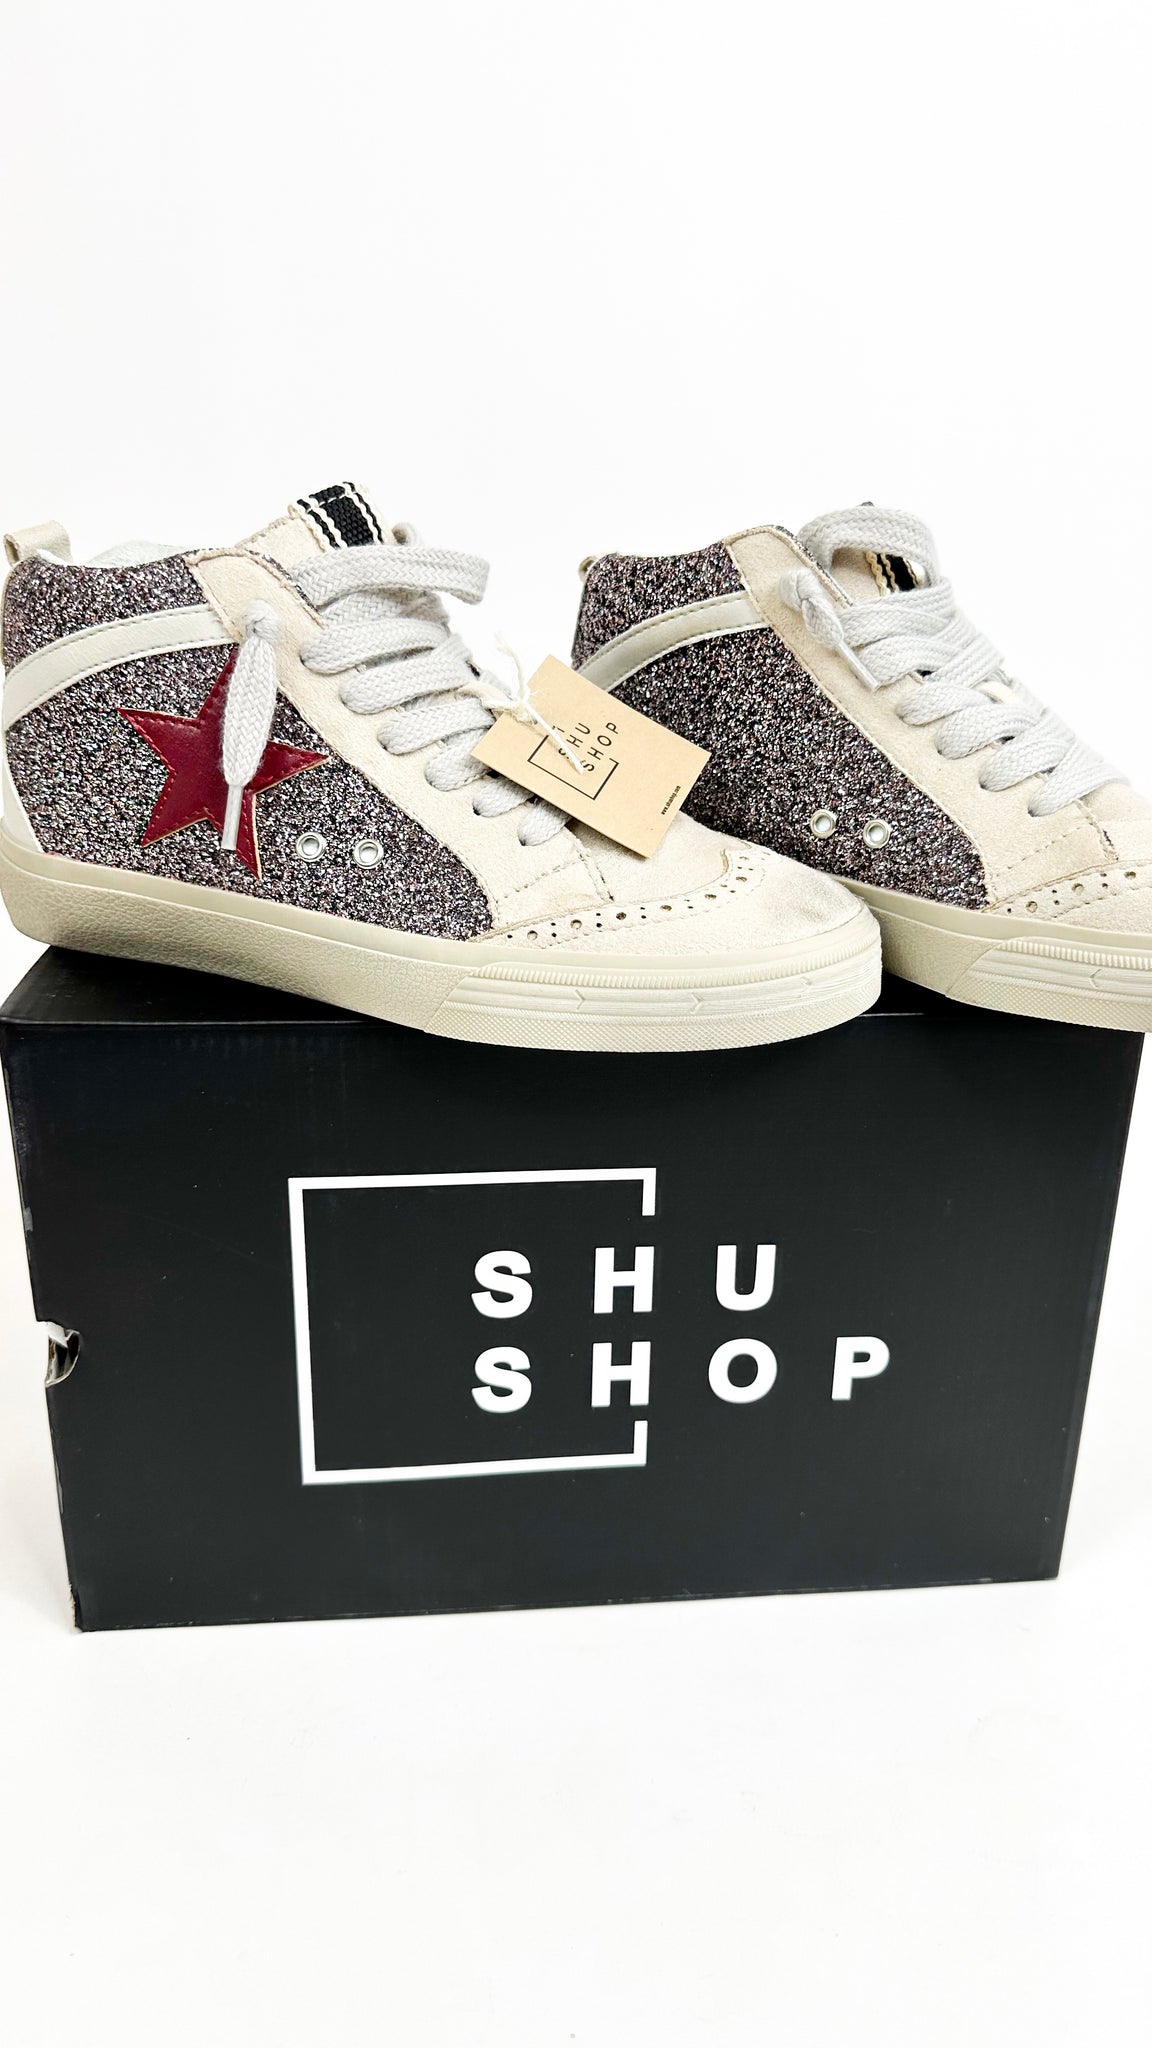 Shu Shop "Paulina Hope" Sneaker